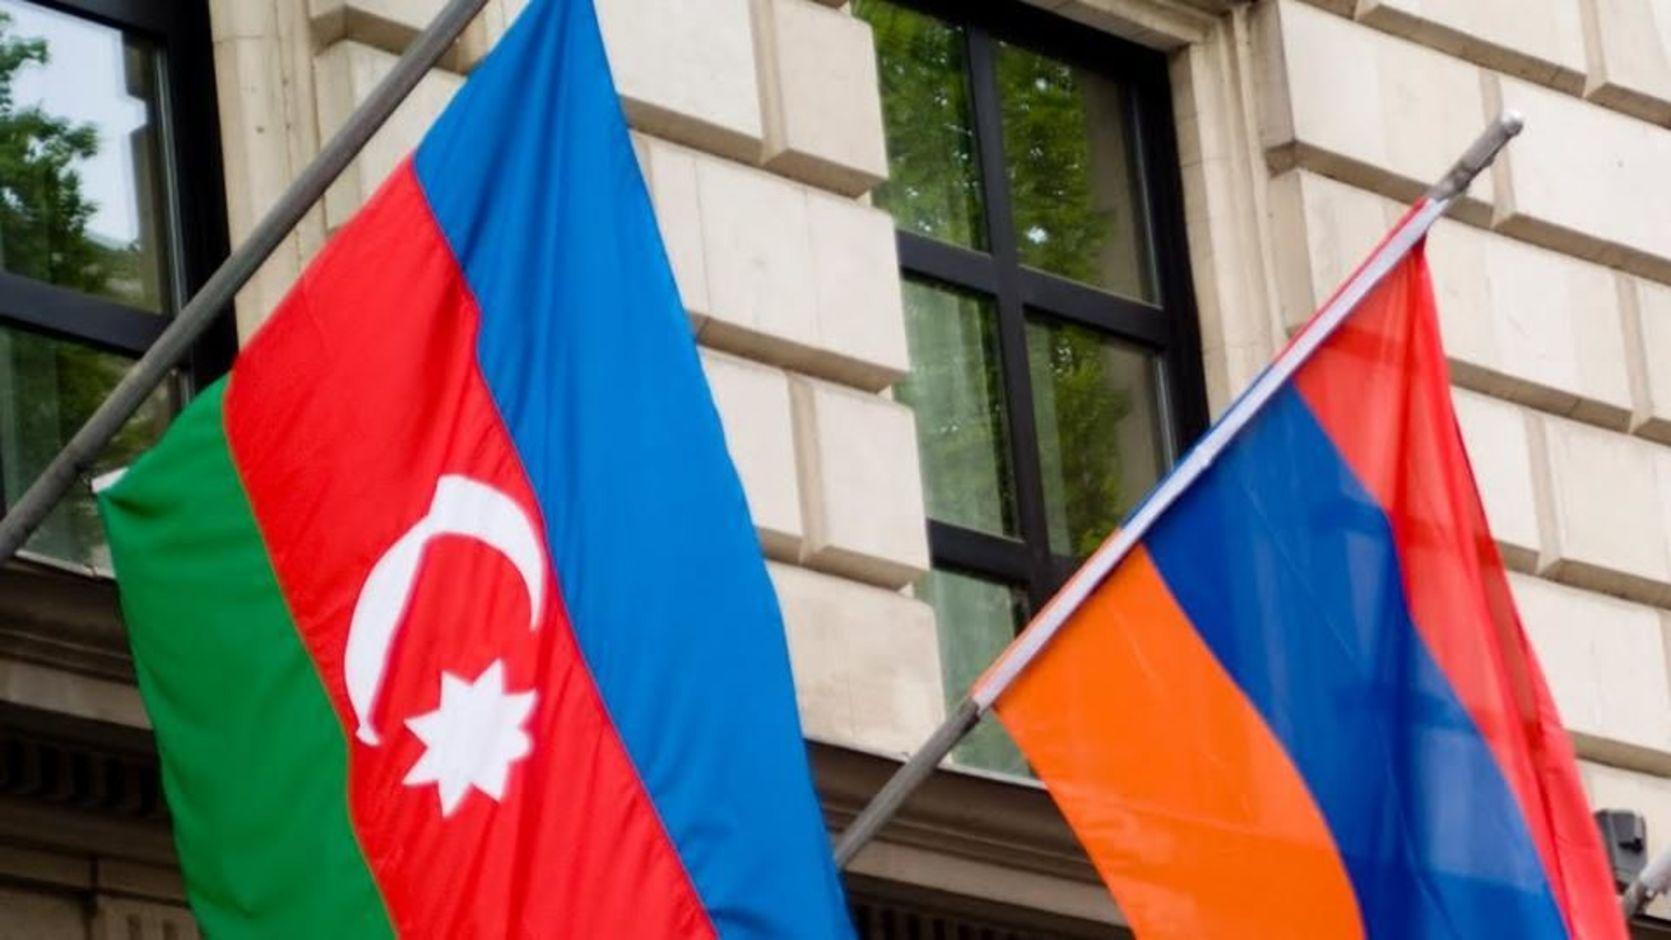 Հայաստանն ու Ադրբեջանը կարող են հրադադար կնքել այս երեկոյան կամ շաբաթ օրը. Ֆրանսպրես